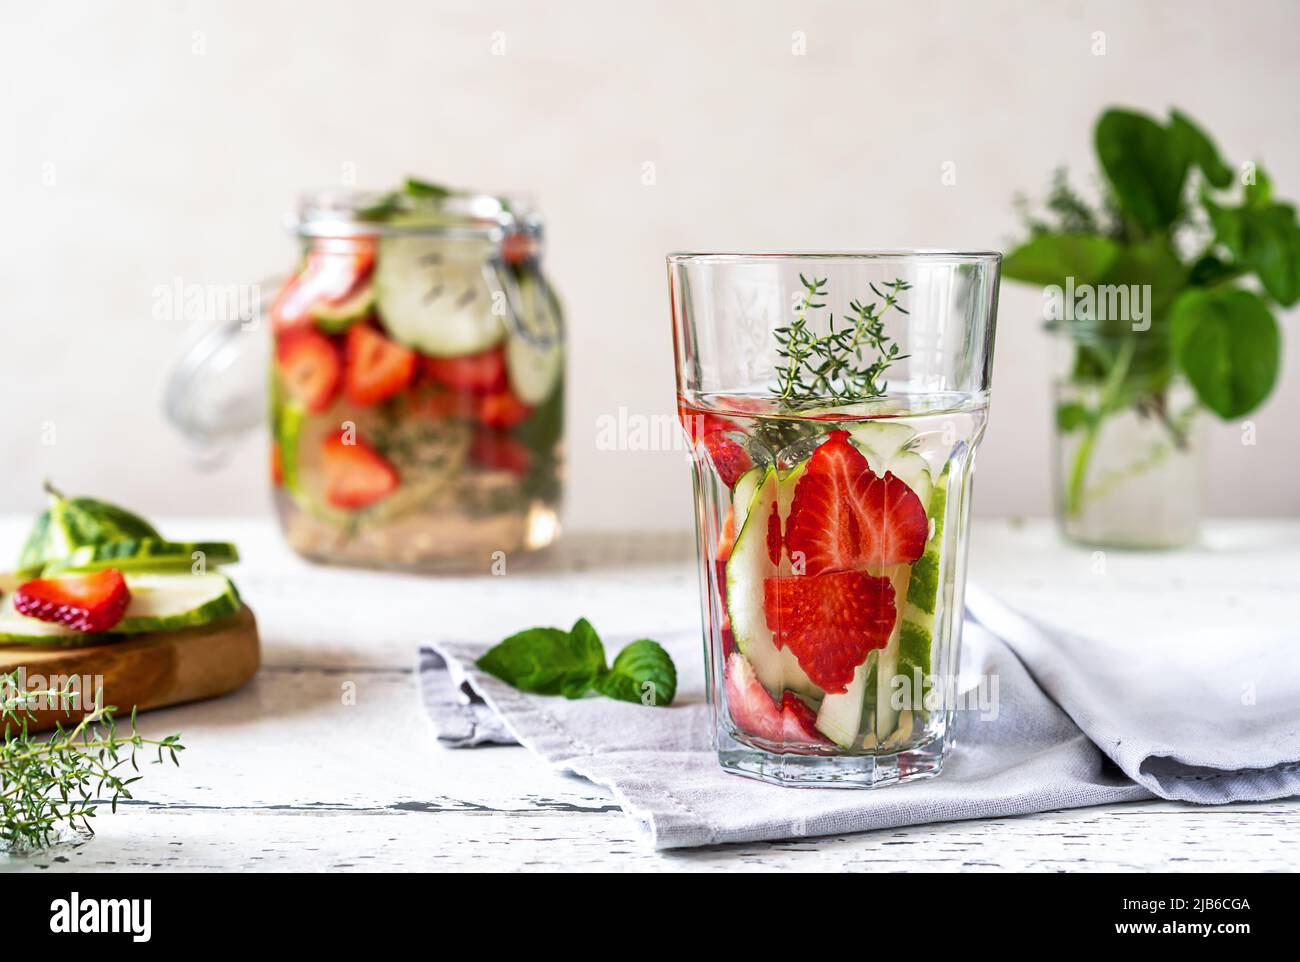 Eau infusée avec fraise et meloncella qui est hybride de concombre et melon, thym, menthe. Banque D'Images